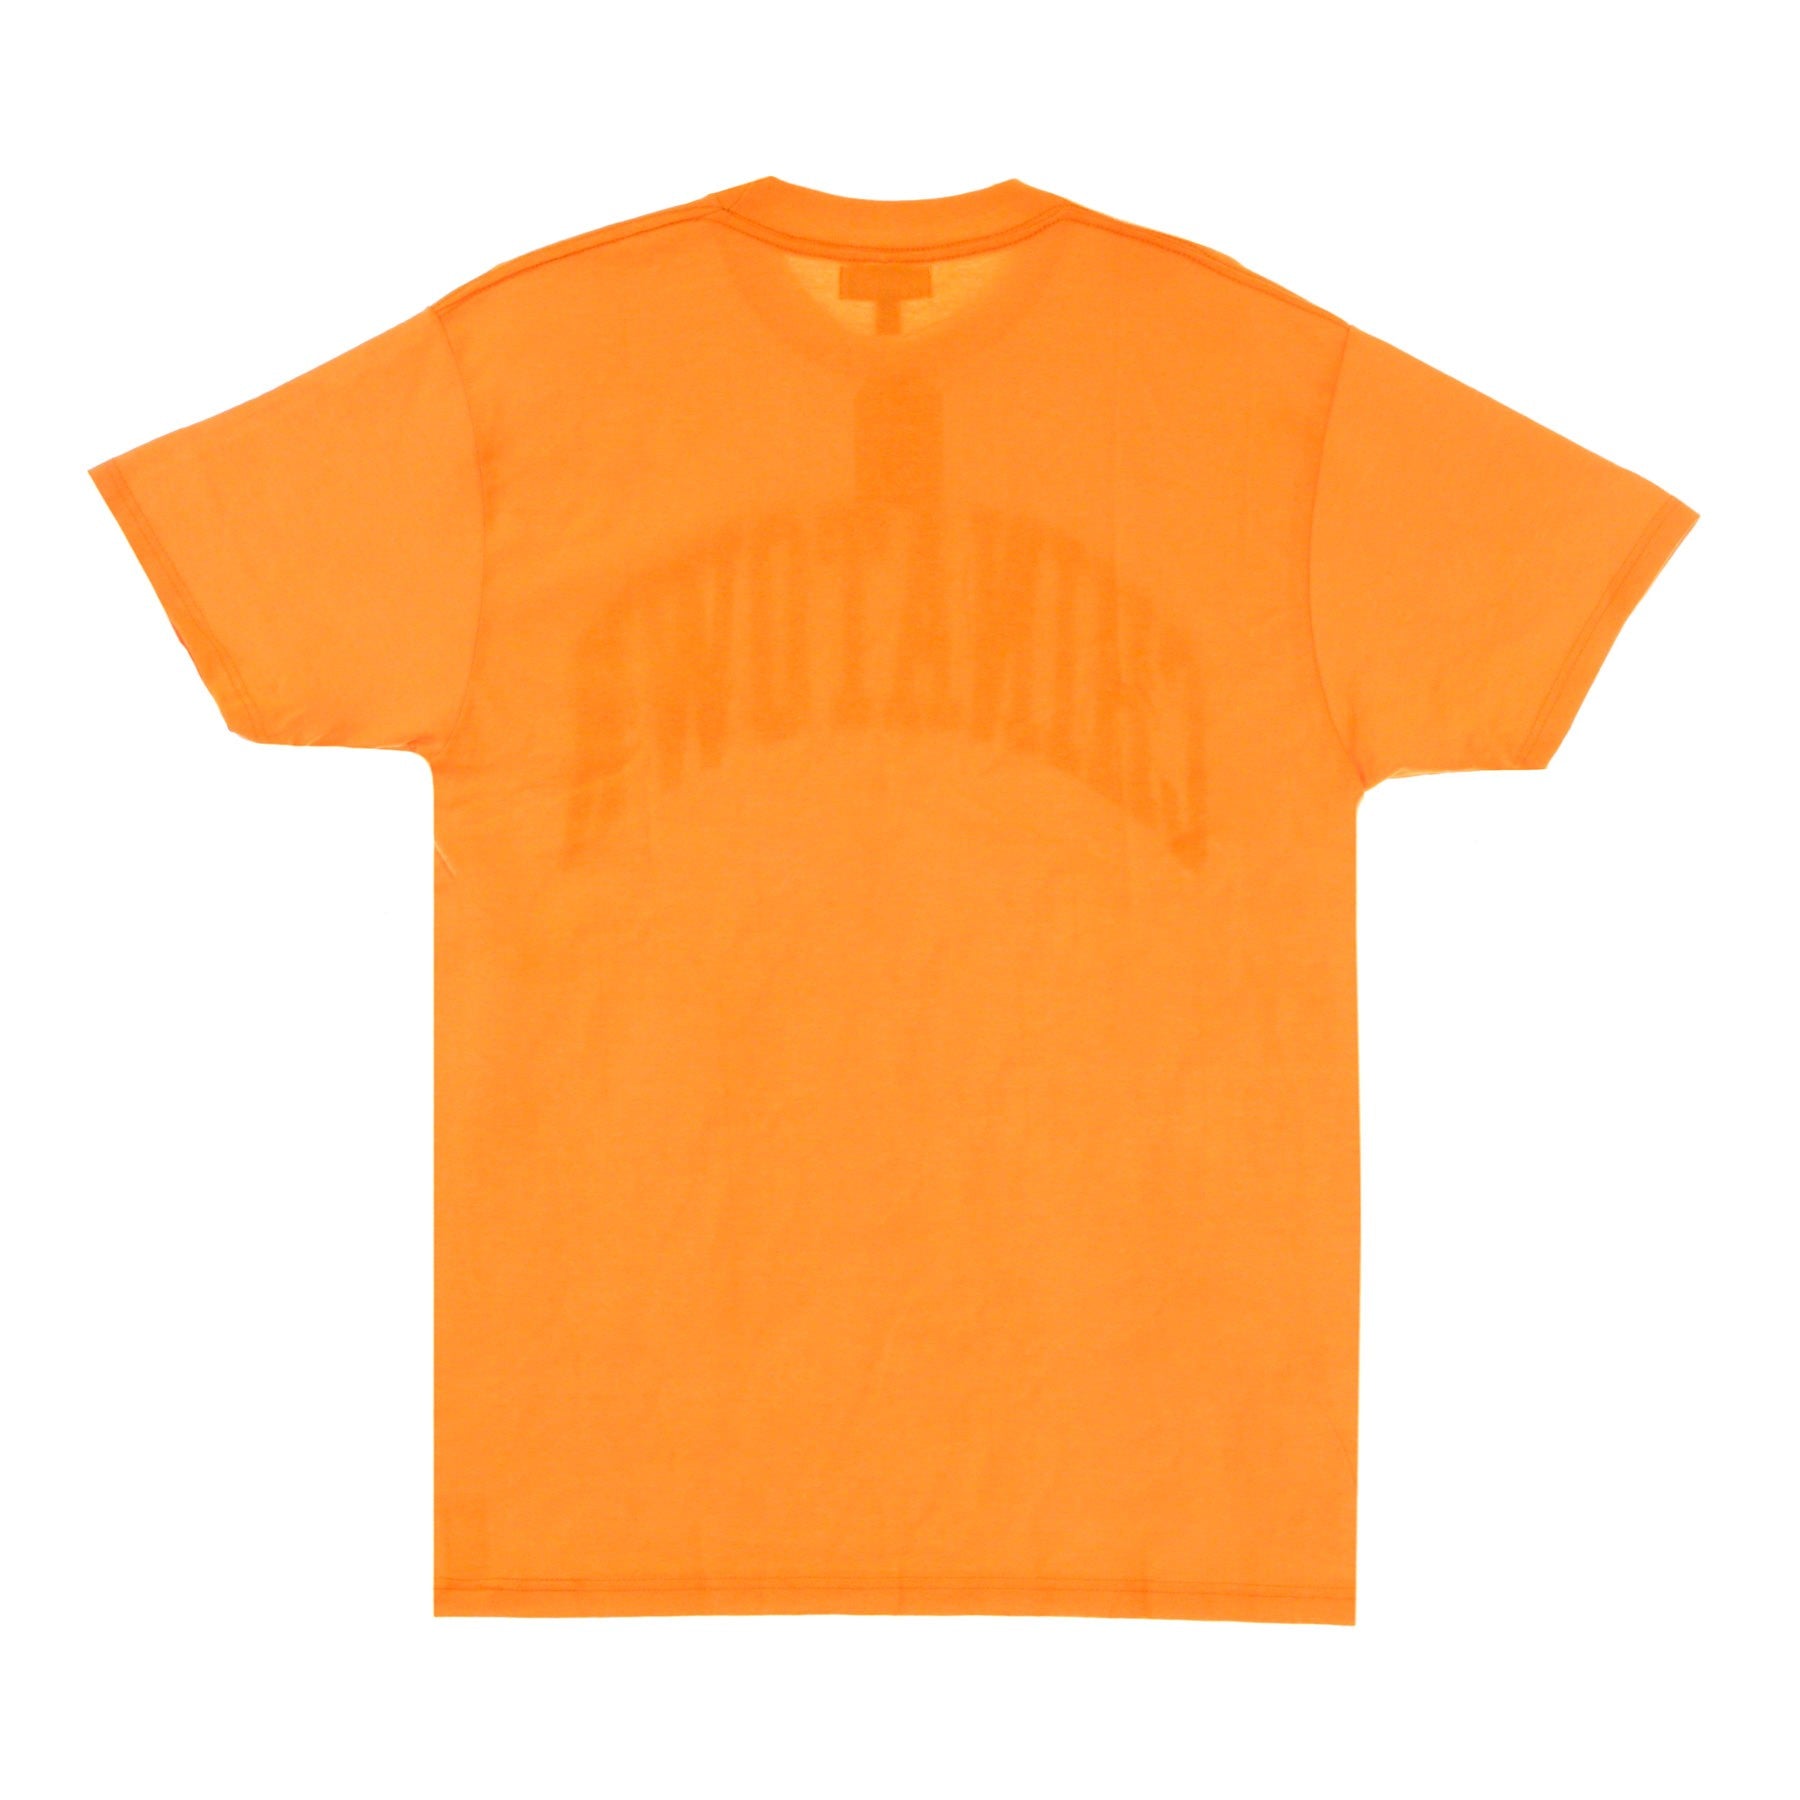 Maglietta Uomo Arc Orange 1990277